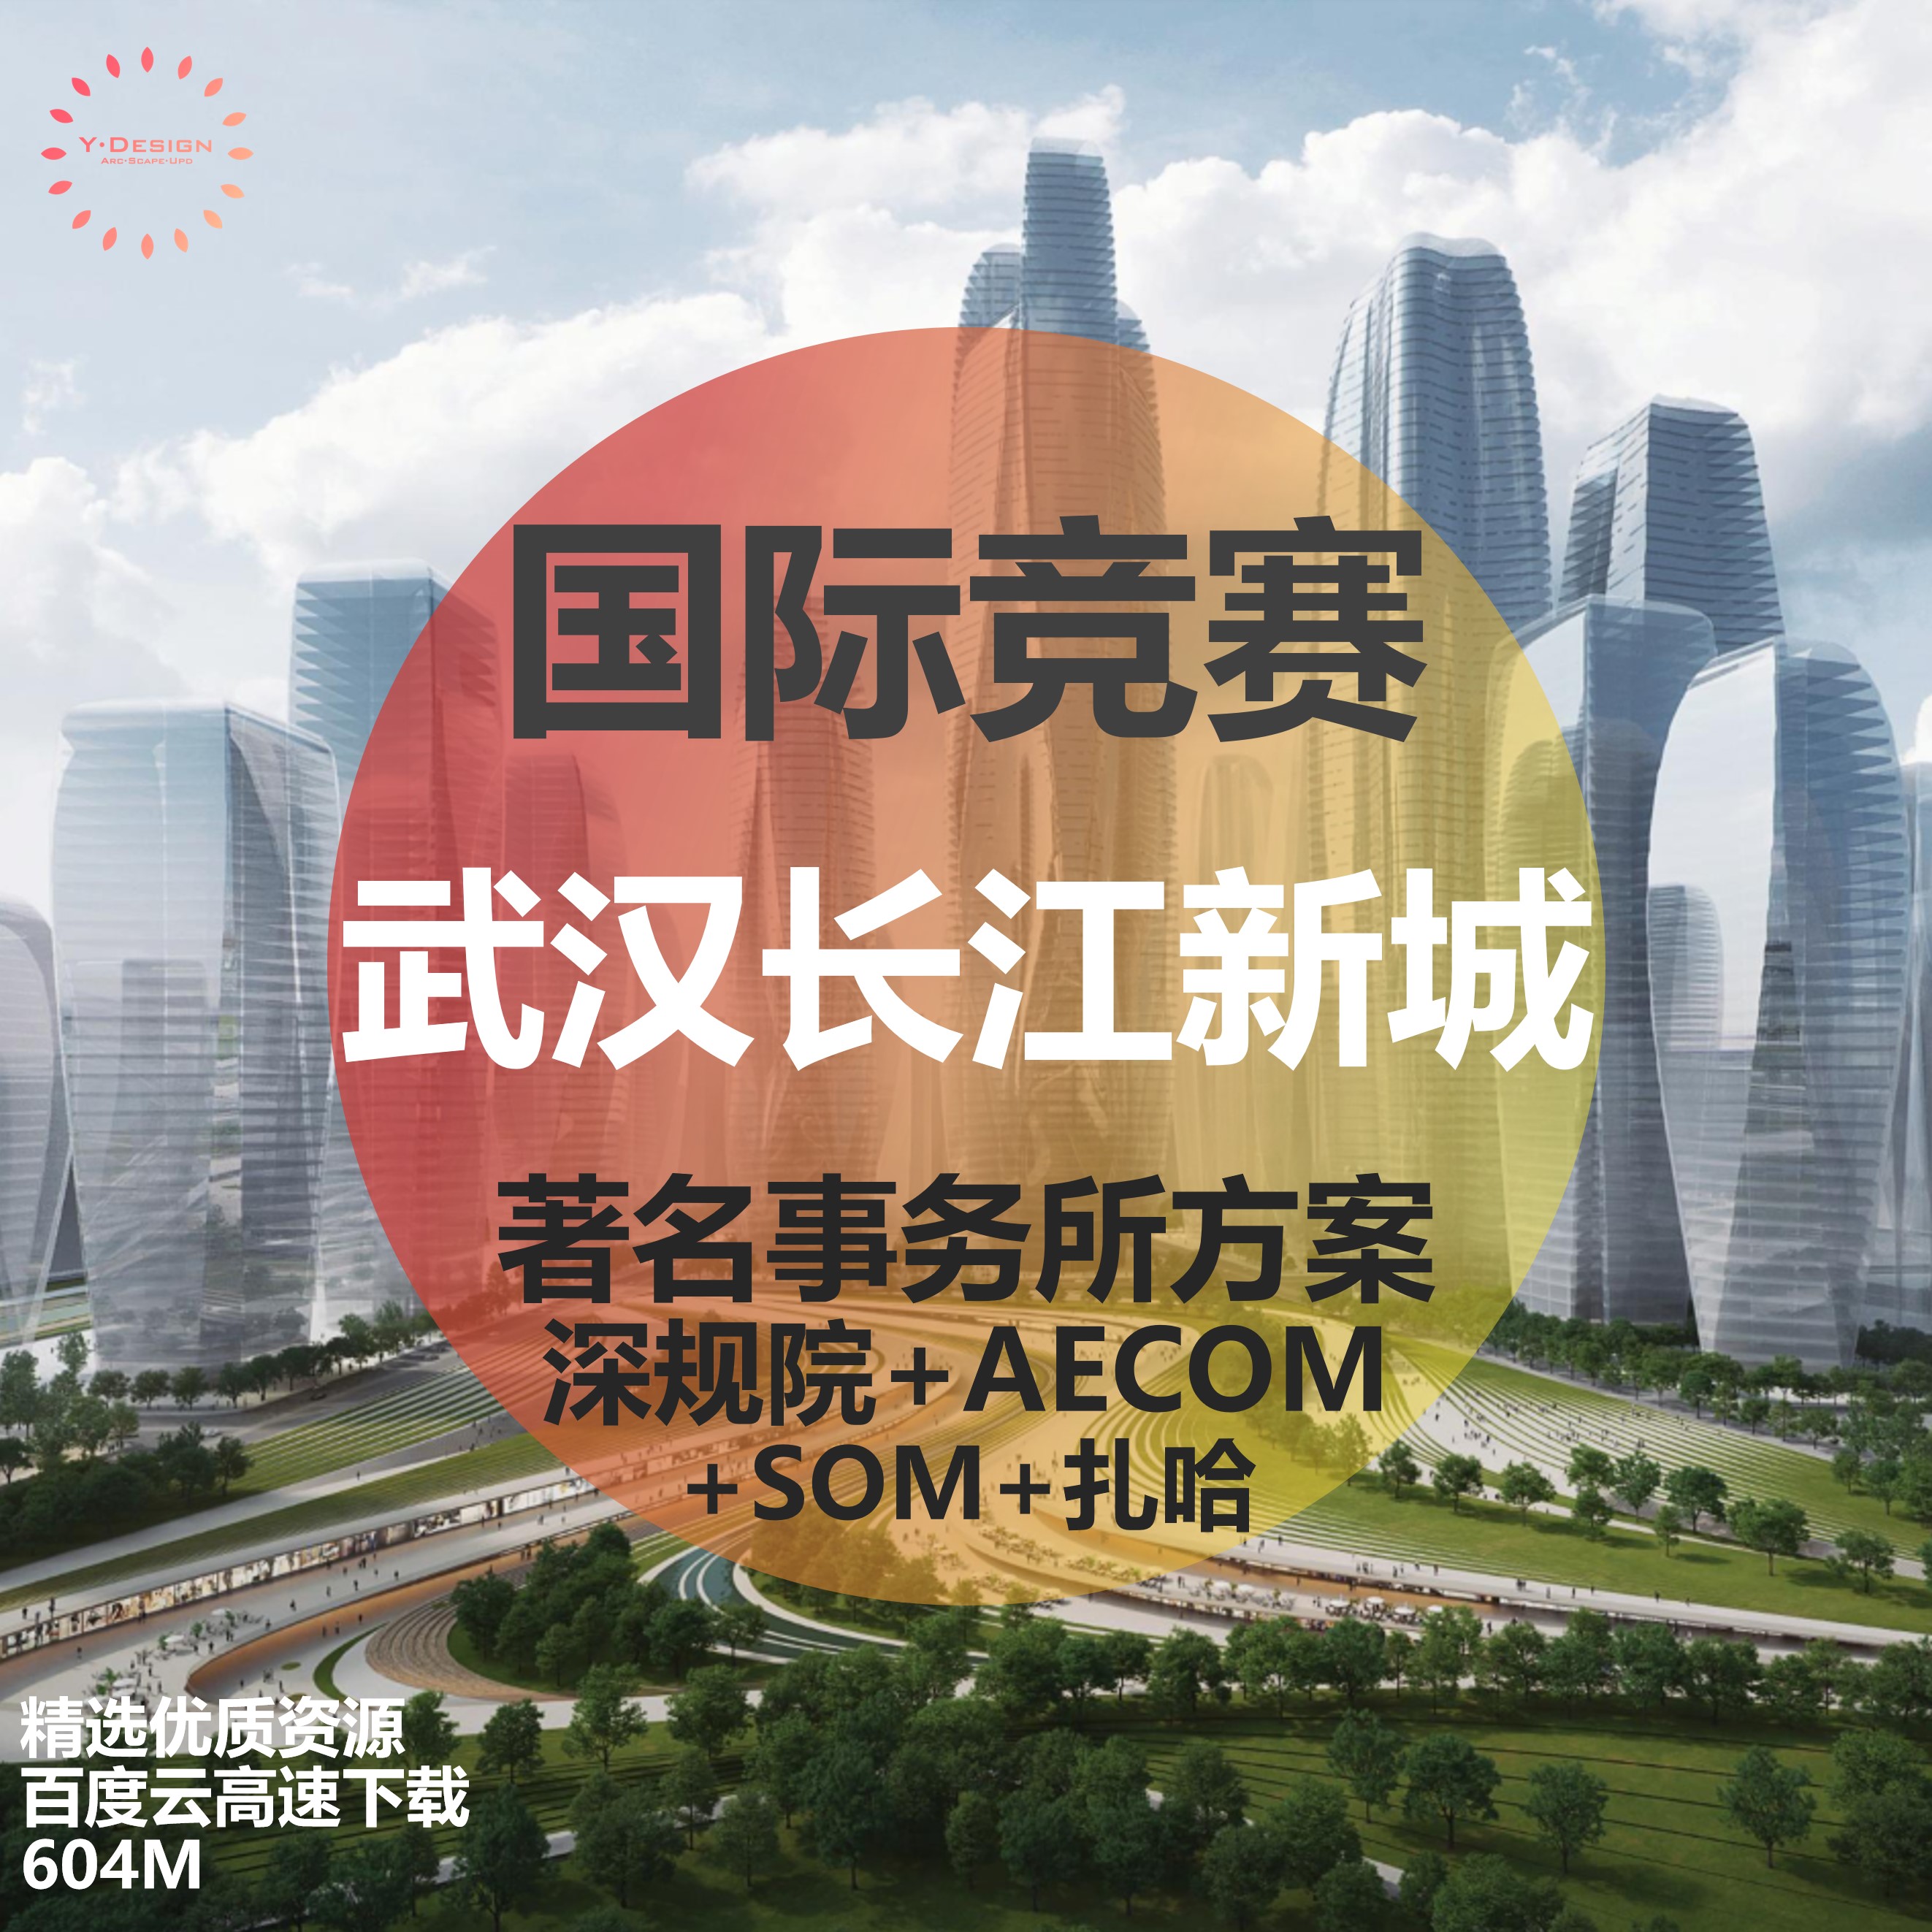 T1821武汉长江新城起步区城市设计概念方案国际竞赛SOM扎哈...-1